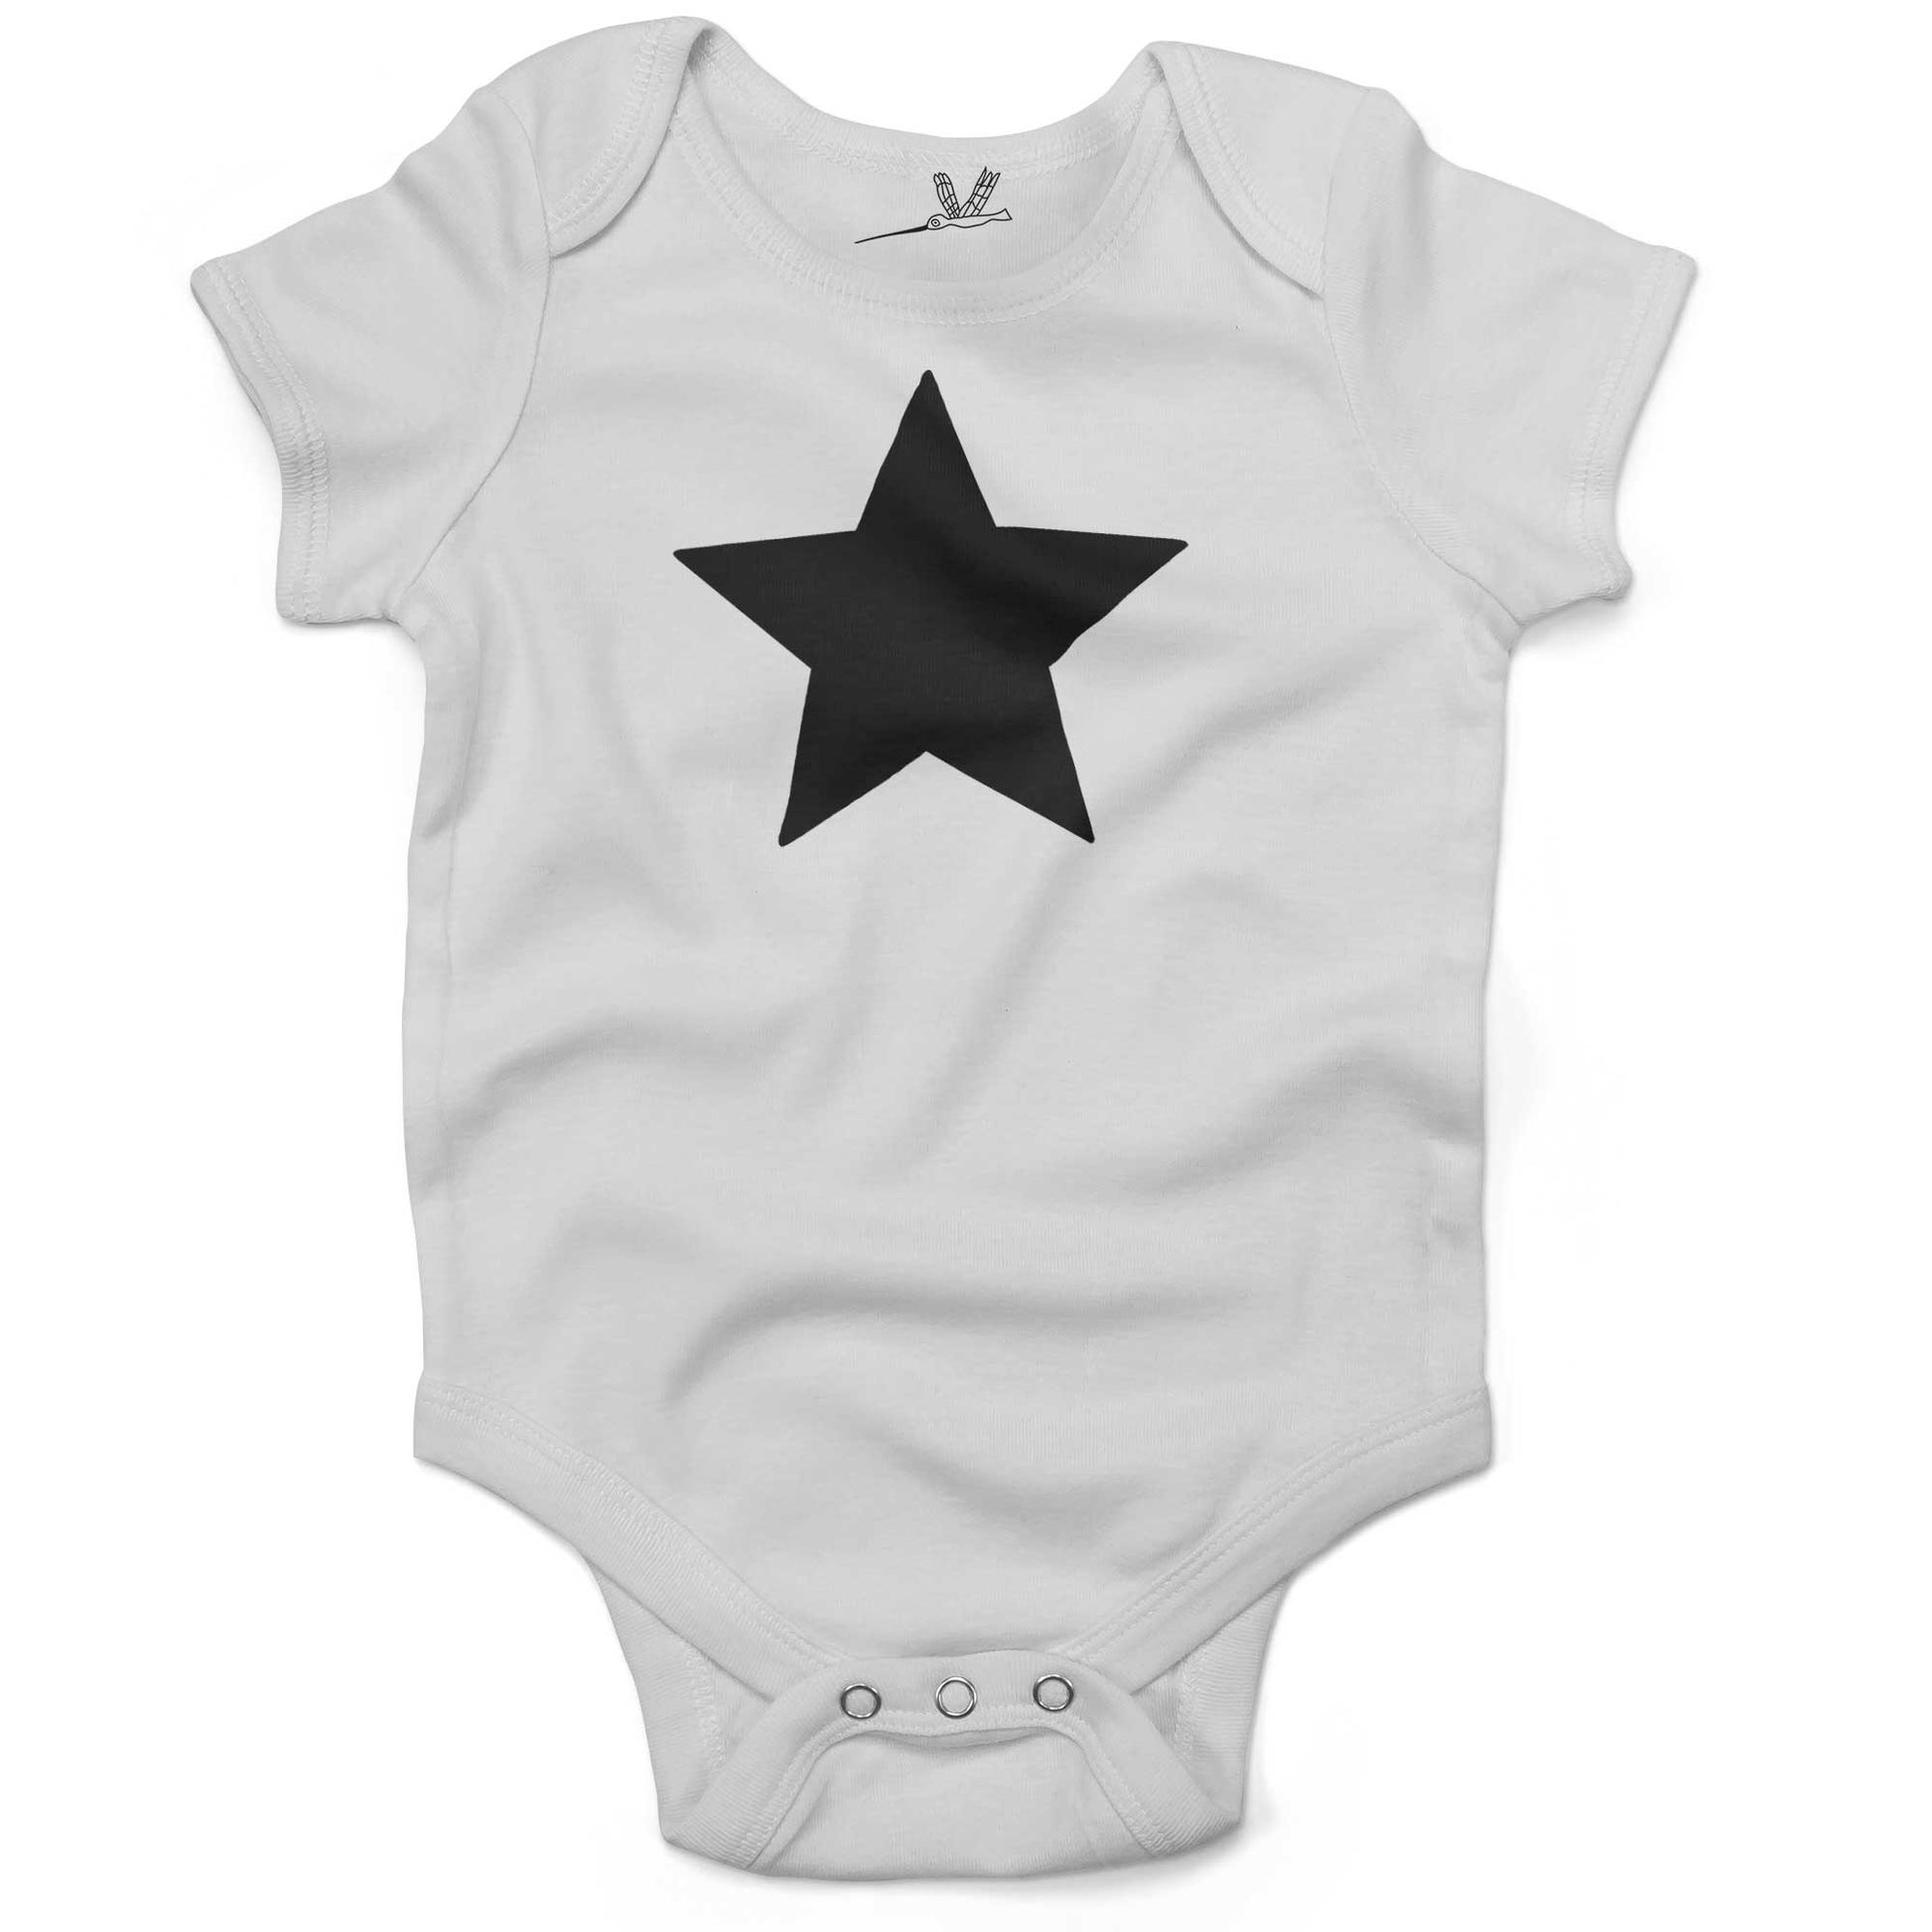 Five Point Star Infant Bodysuit-White-Black Star